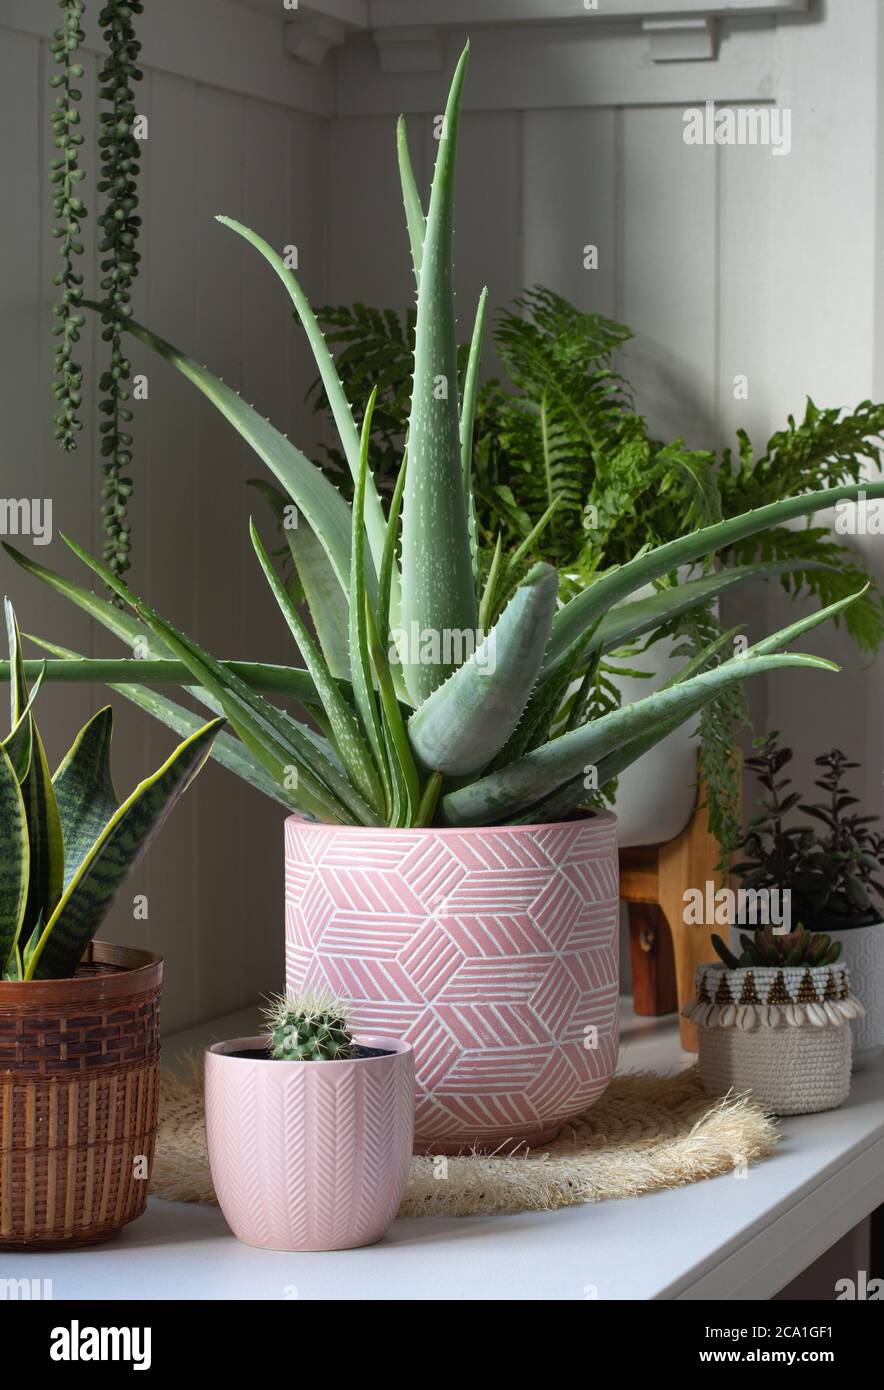 planta aloe vera en maceta de cerámica rosa en interior blanco habitación  con otras plantas en macetas Fotografía de stock - Alamy